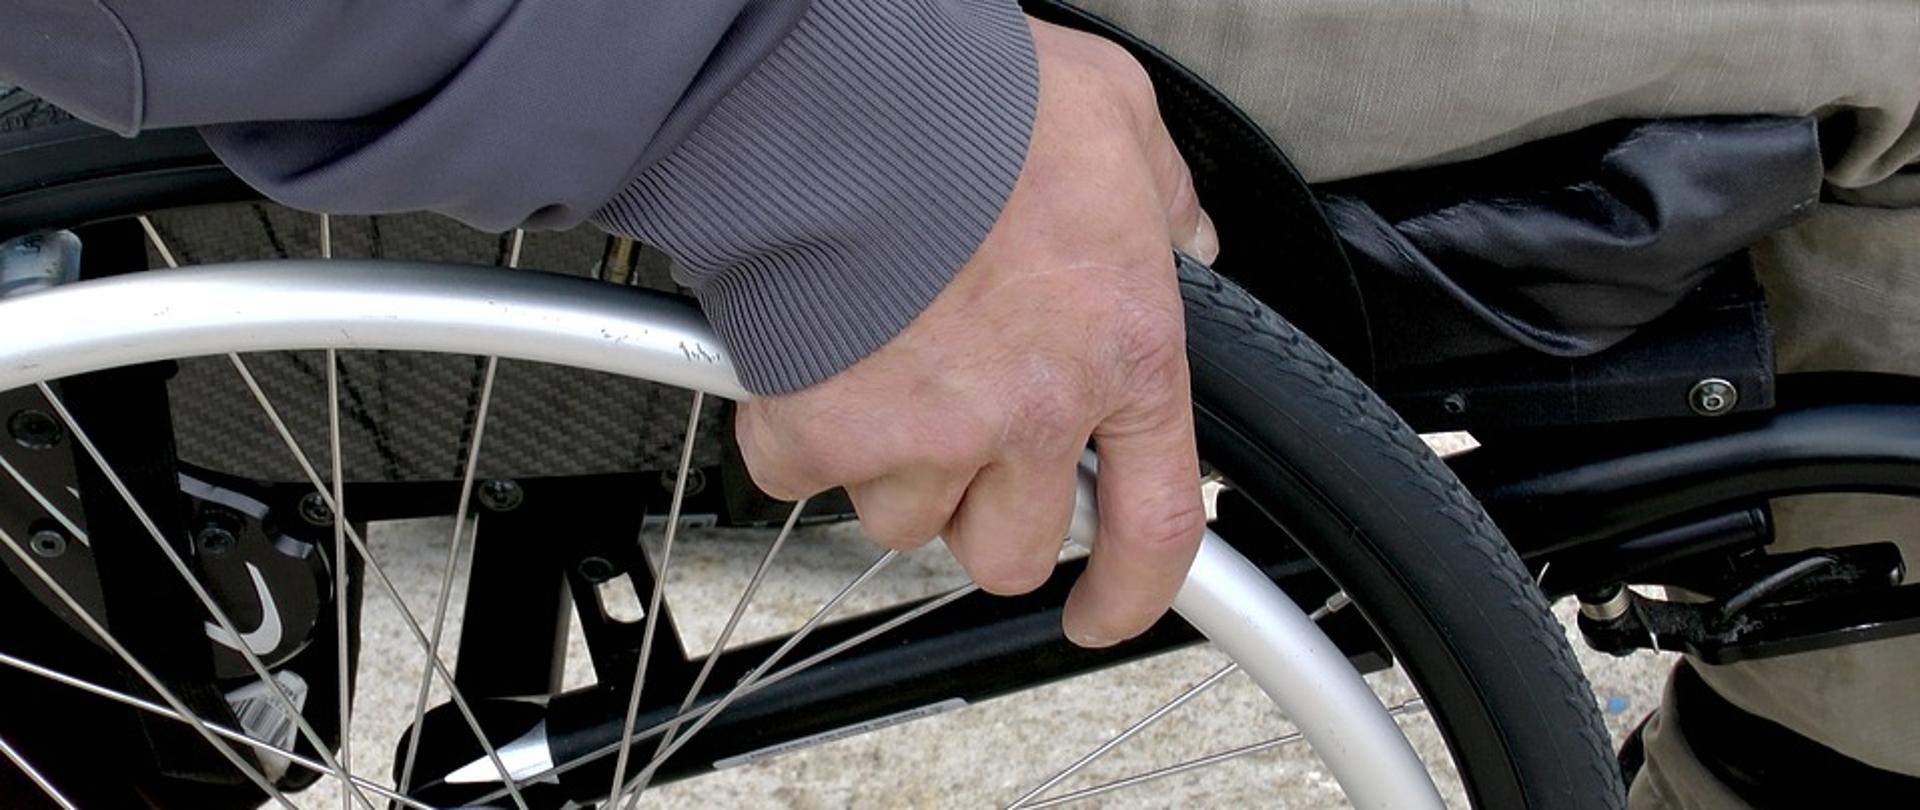 10 faktów o wsparciu osób niepełnosprawnych podczas epidemii